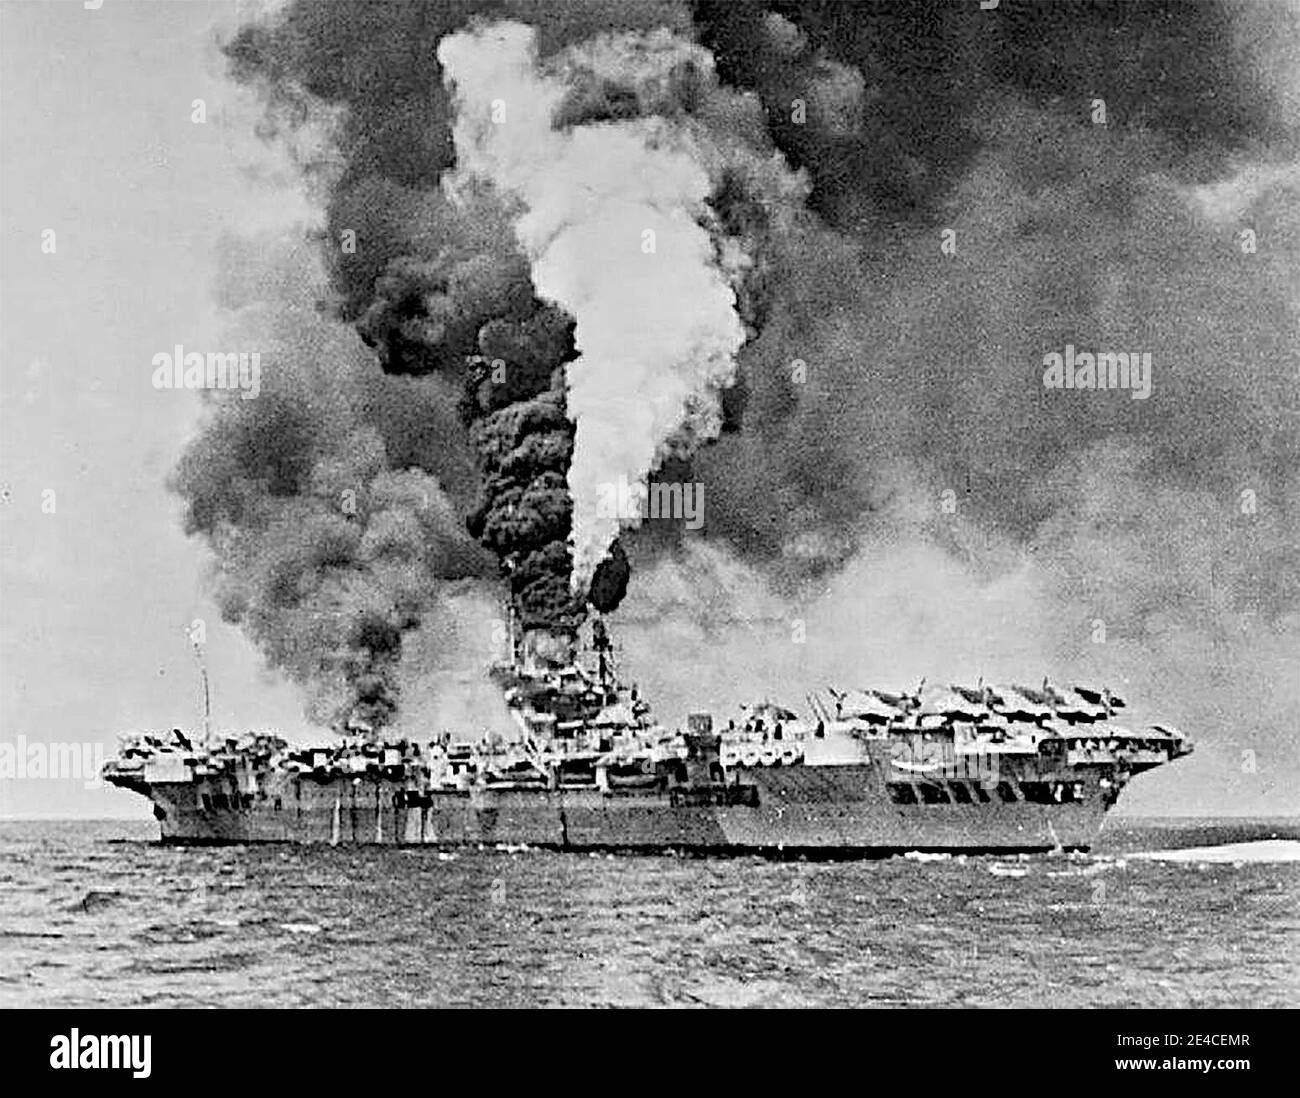 Der Flugzeugträger HMS Formidable (R67) in Brand, nachdem er von einer Kamikaze vor Sakishima Gnato getroffen wurde. Formidable wurde um 1130 Uhr getroffen, die Kamikaze machte eine massive Delle etwa 3 m lang, 0.6 m breit und tief in der gepanzerten Flugdeck. Ein großer Stahlsplitter spreizte durch das Hangardeck und den mittleren Kesselraum, wo er eine Dampfleitung zerbrach, und kam in einem Kraftstofftank zur Ruhe, was einen Großbrand im Flugzeugpark ausbrach. Acht Besatzungsmitglieder wurden getötet und 47 verletzt. Ein Vought Corsair und zehn Grumman Avengers wurden zerstört. Mai 1945 Stockfoto